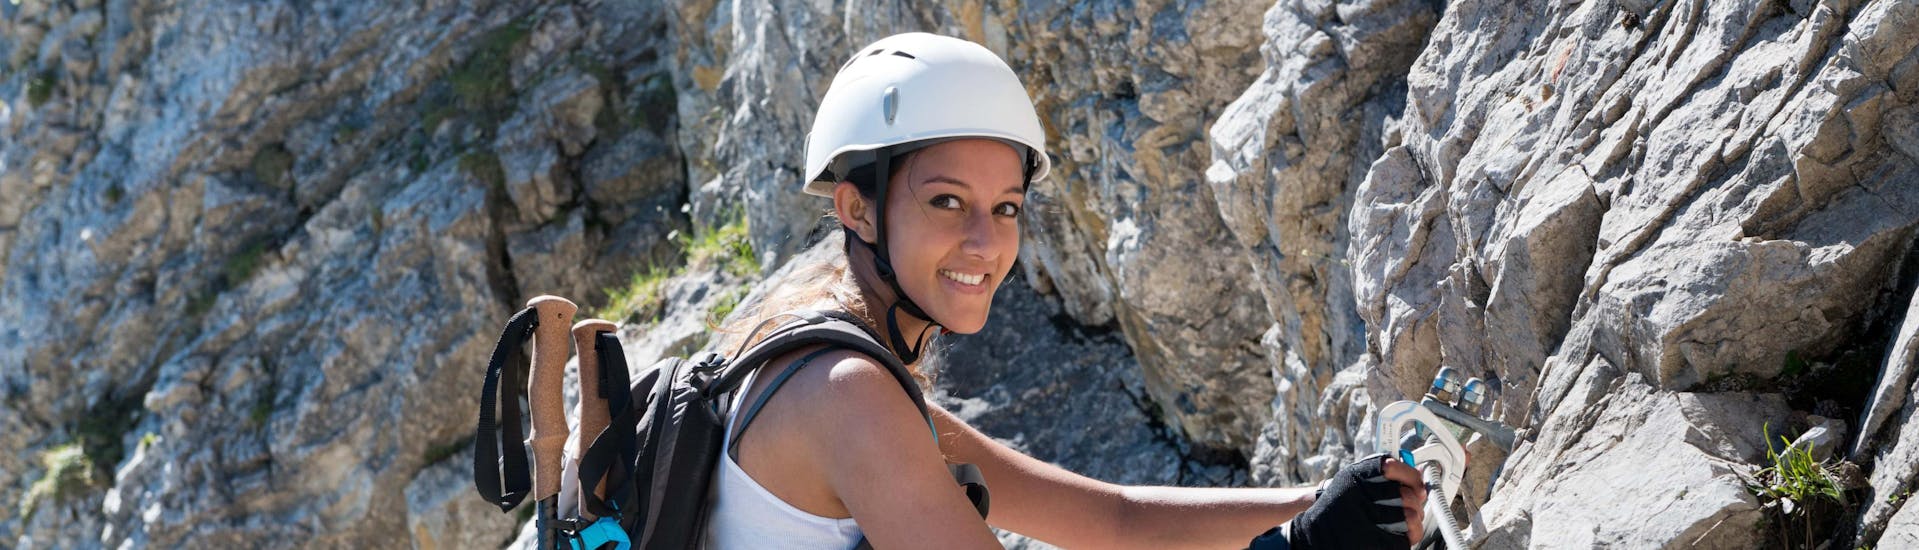 Riva del Garda: Een jonge vrouw neemt deel aan een klettersteigtocht in een van de hotspots voor via ferrata.